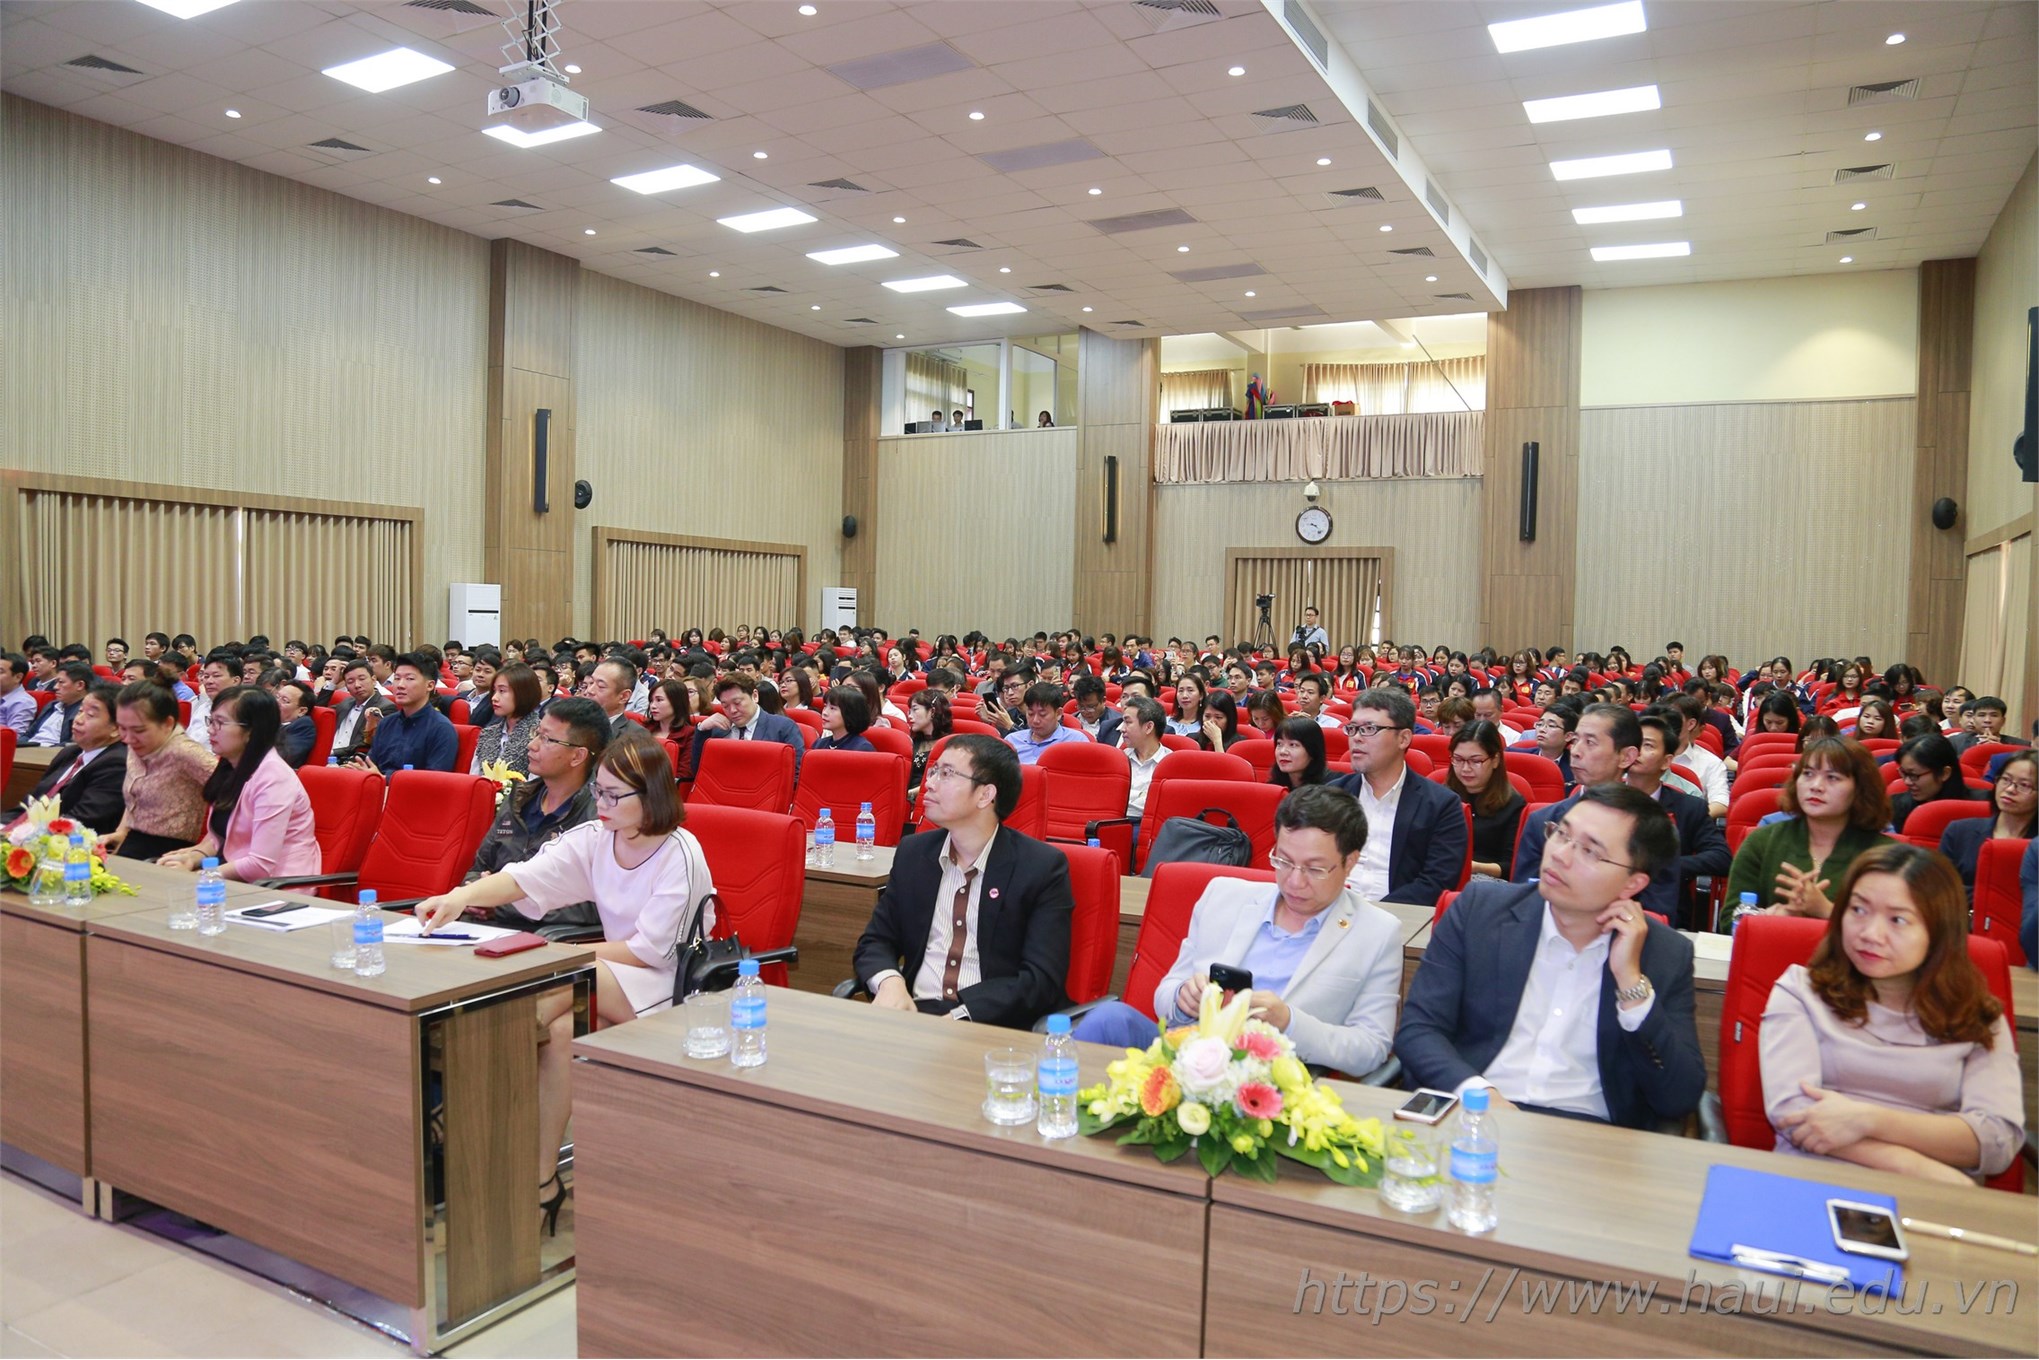 Đại học Công nghiệp Hà Nội tổ chức Hội nghị tổng kết và gặp mặt hơn 100 doanh nghiệp